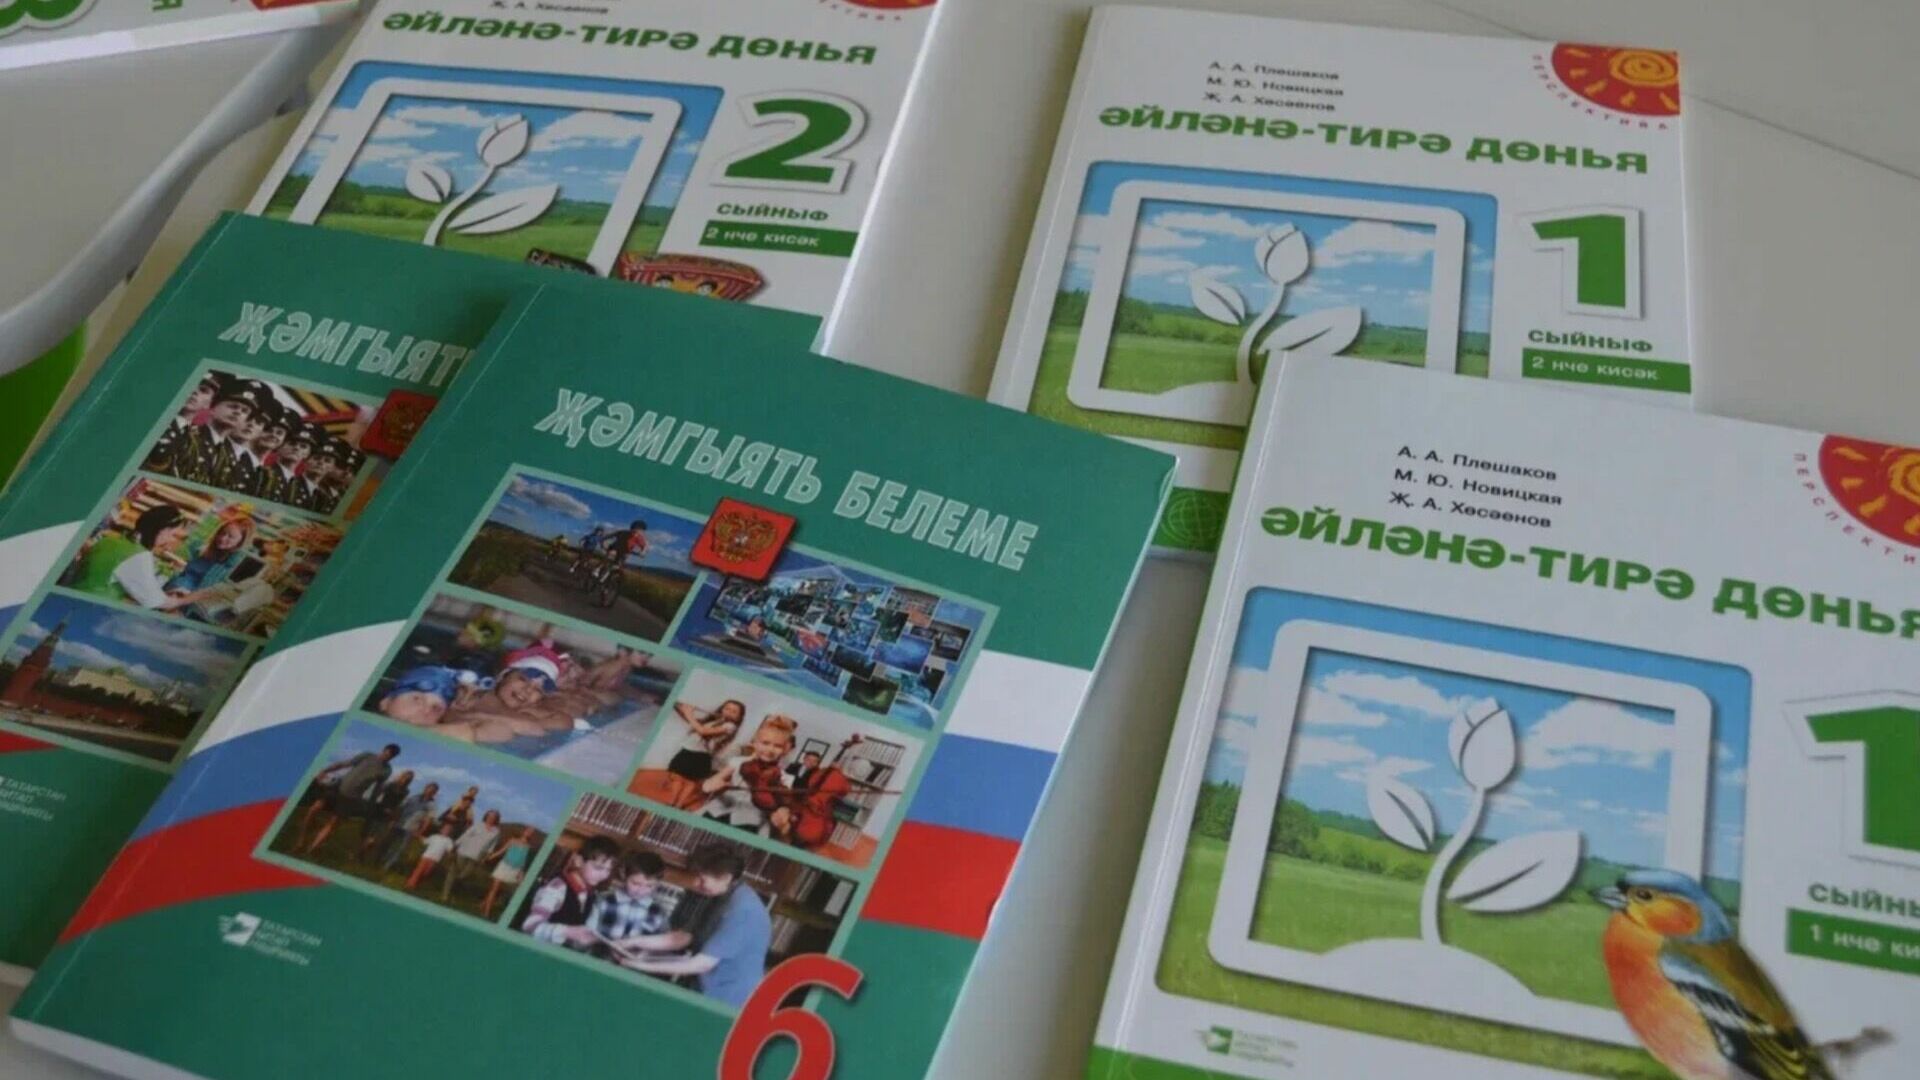 Активисты хотят обязать чиновников учить татарский язык